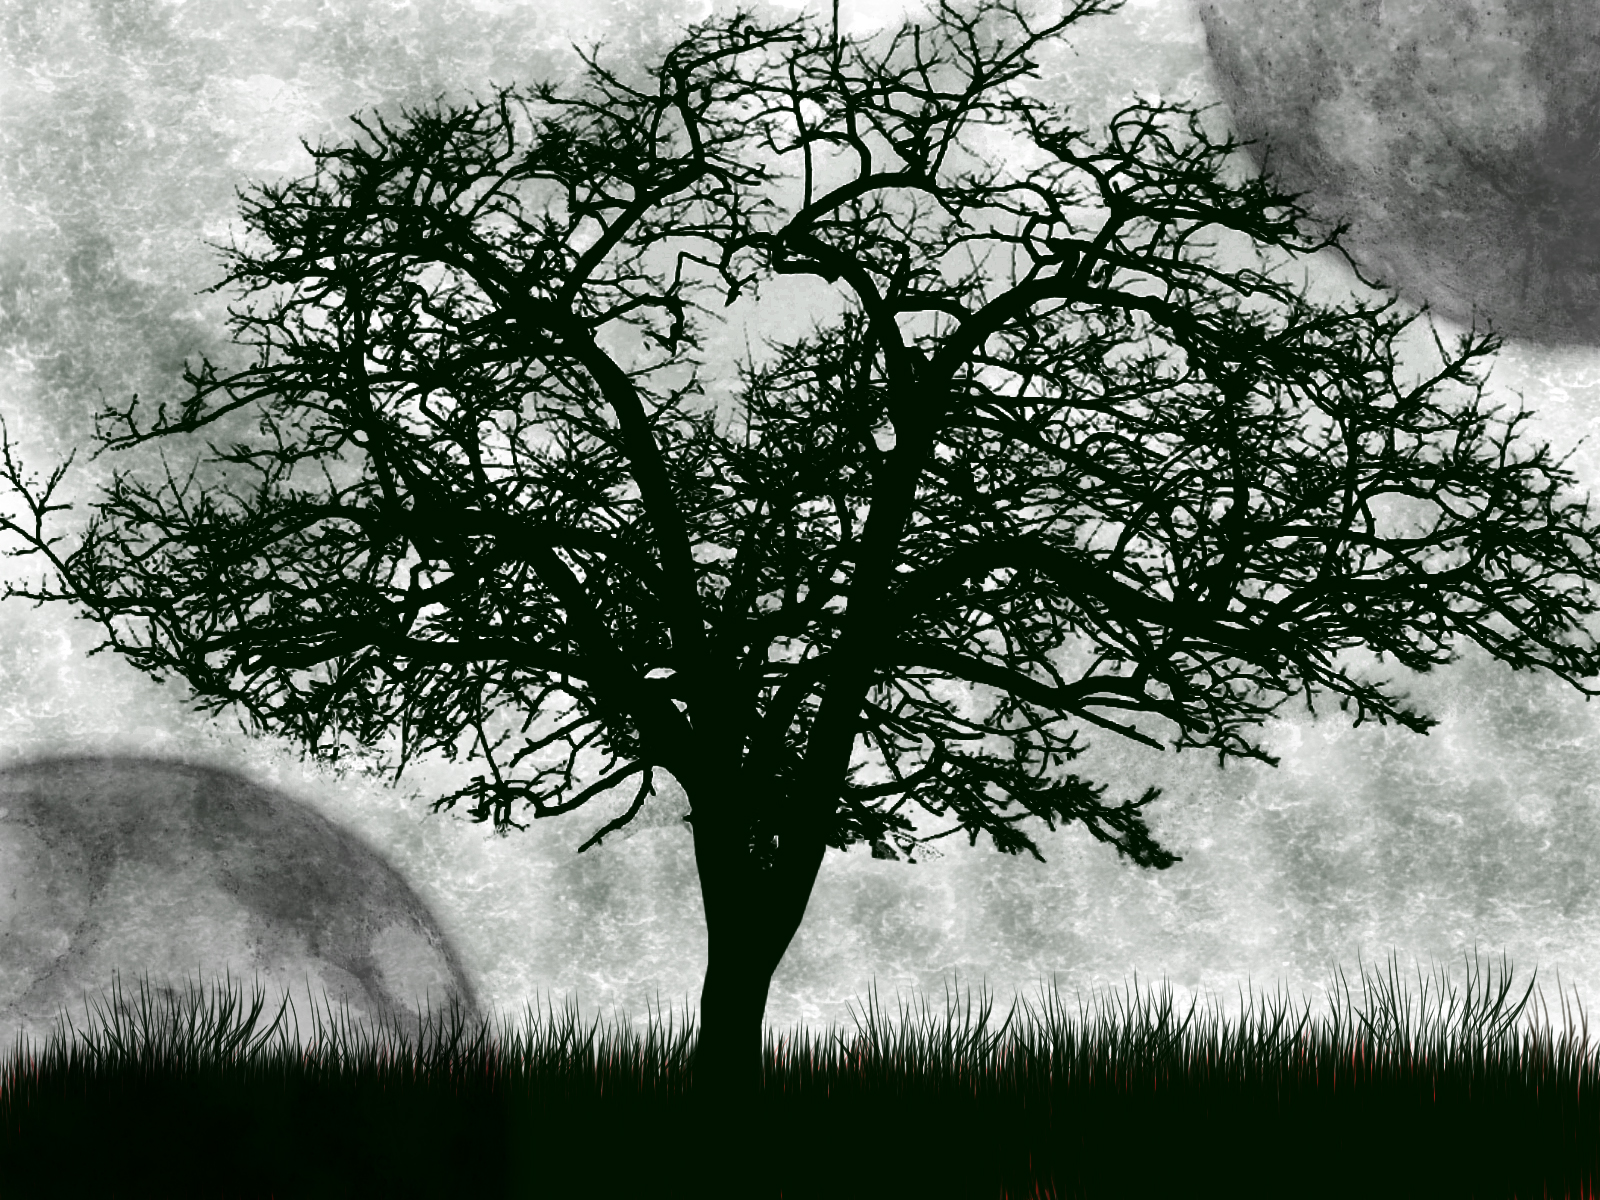 The Dark Tree Drawing - deceased_blade © 2018 - Nov 5, 2013